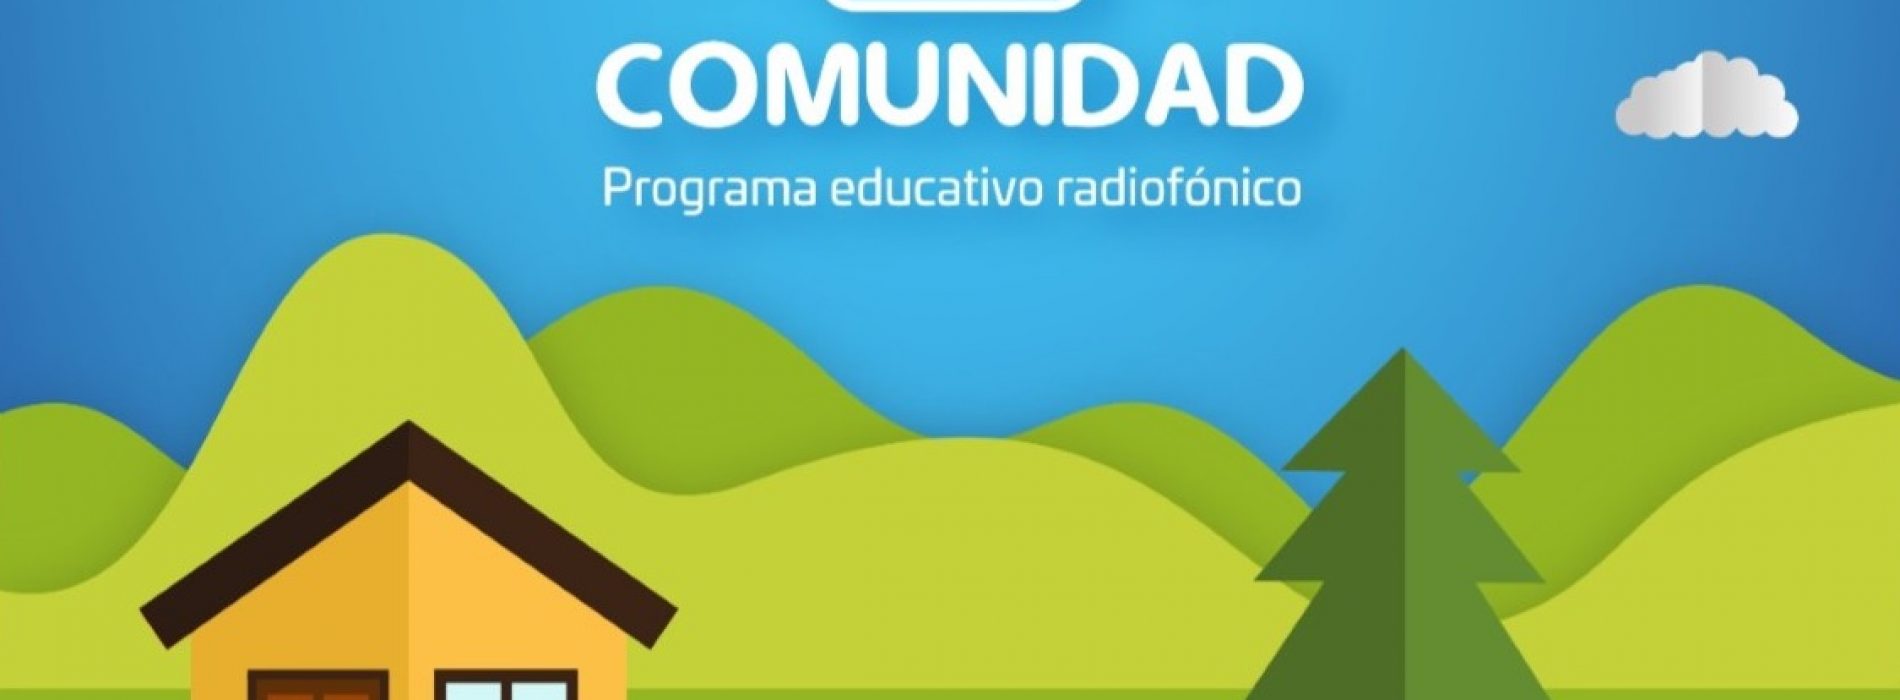 Cumple un año serie radiofónica infantil “Aprendiendo desde mi comunidad”